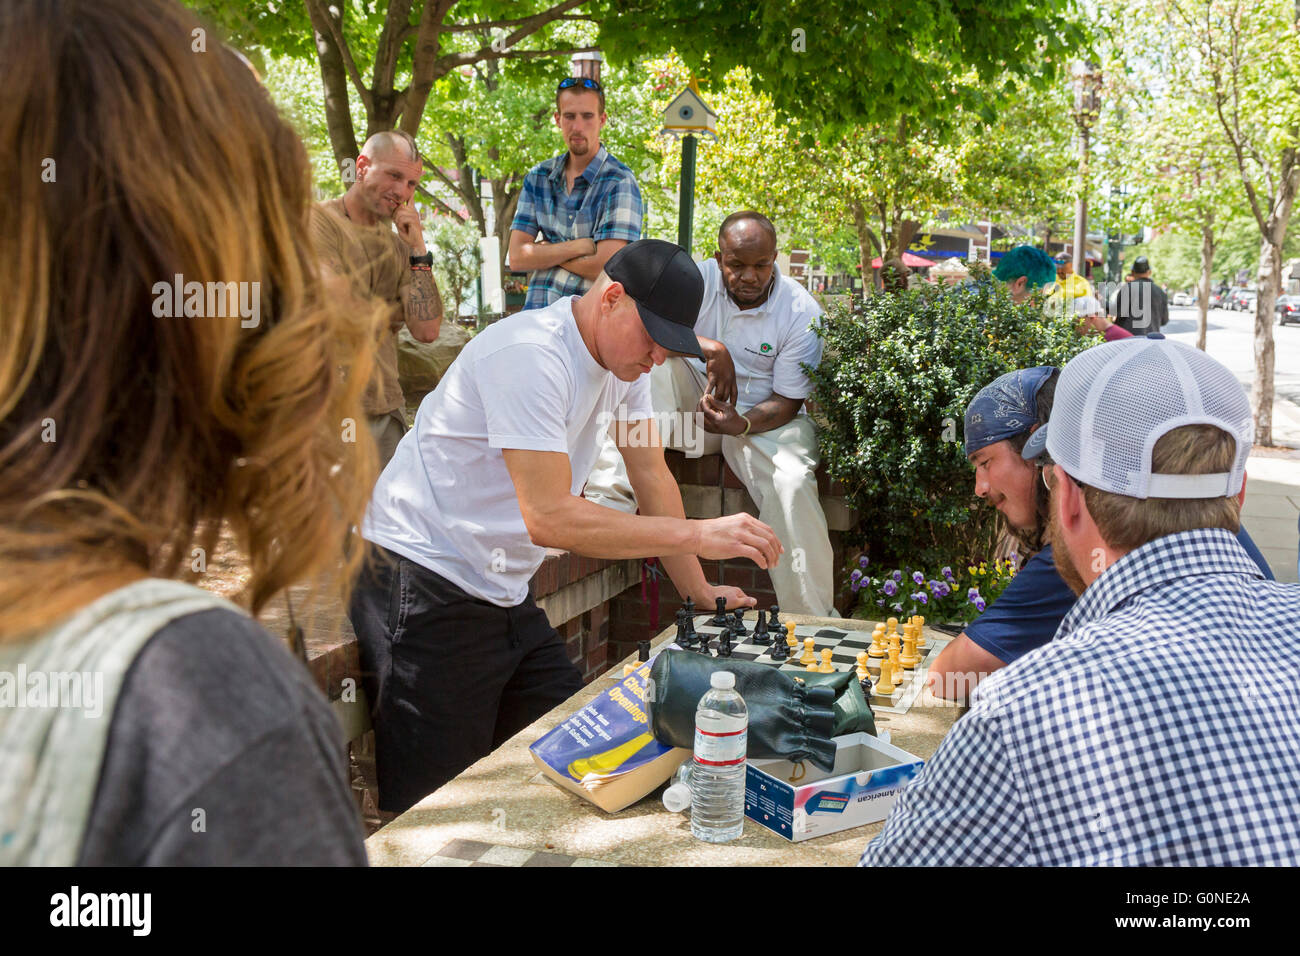 Asheville, North Carolina - Attore Woody Harrelson (cappuccio nero) gioca a scacchi in Pritchard Park. Molti clienti abituali del parco sono senzatetto. Foto Stock